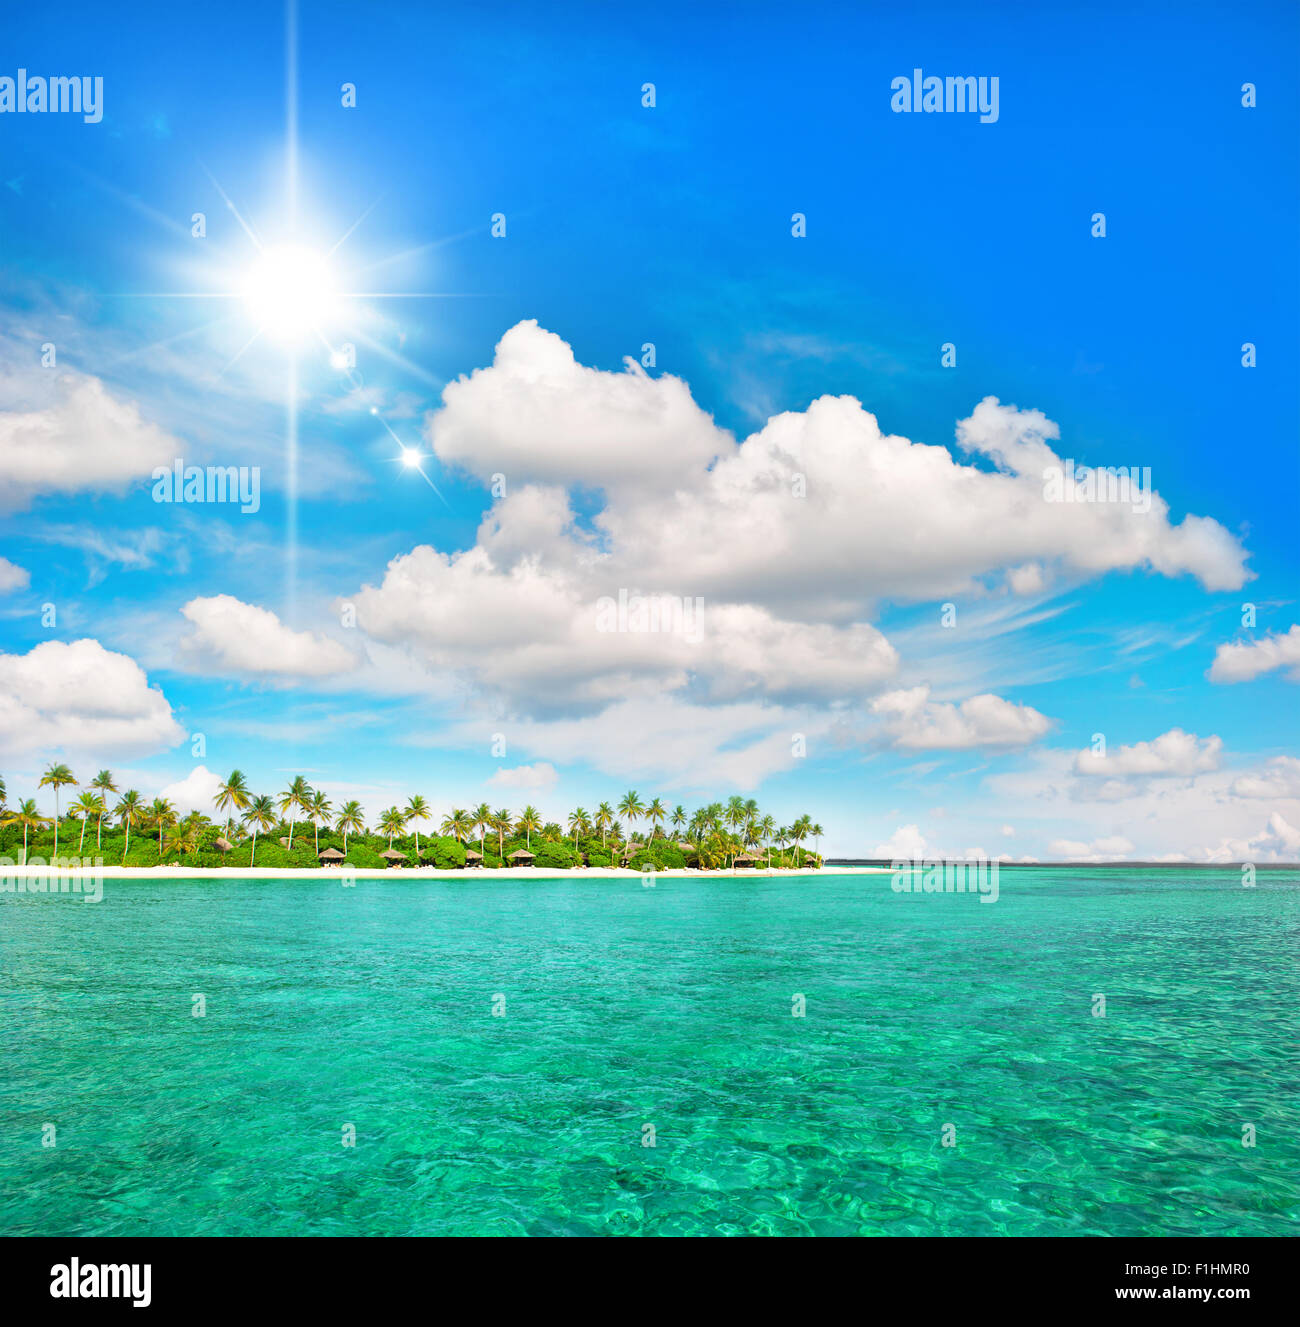 Plage de l'île tropicale avec palmiers et ciel bleu ensoleillé Banque D'Images